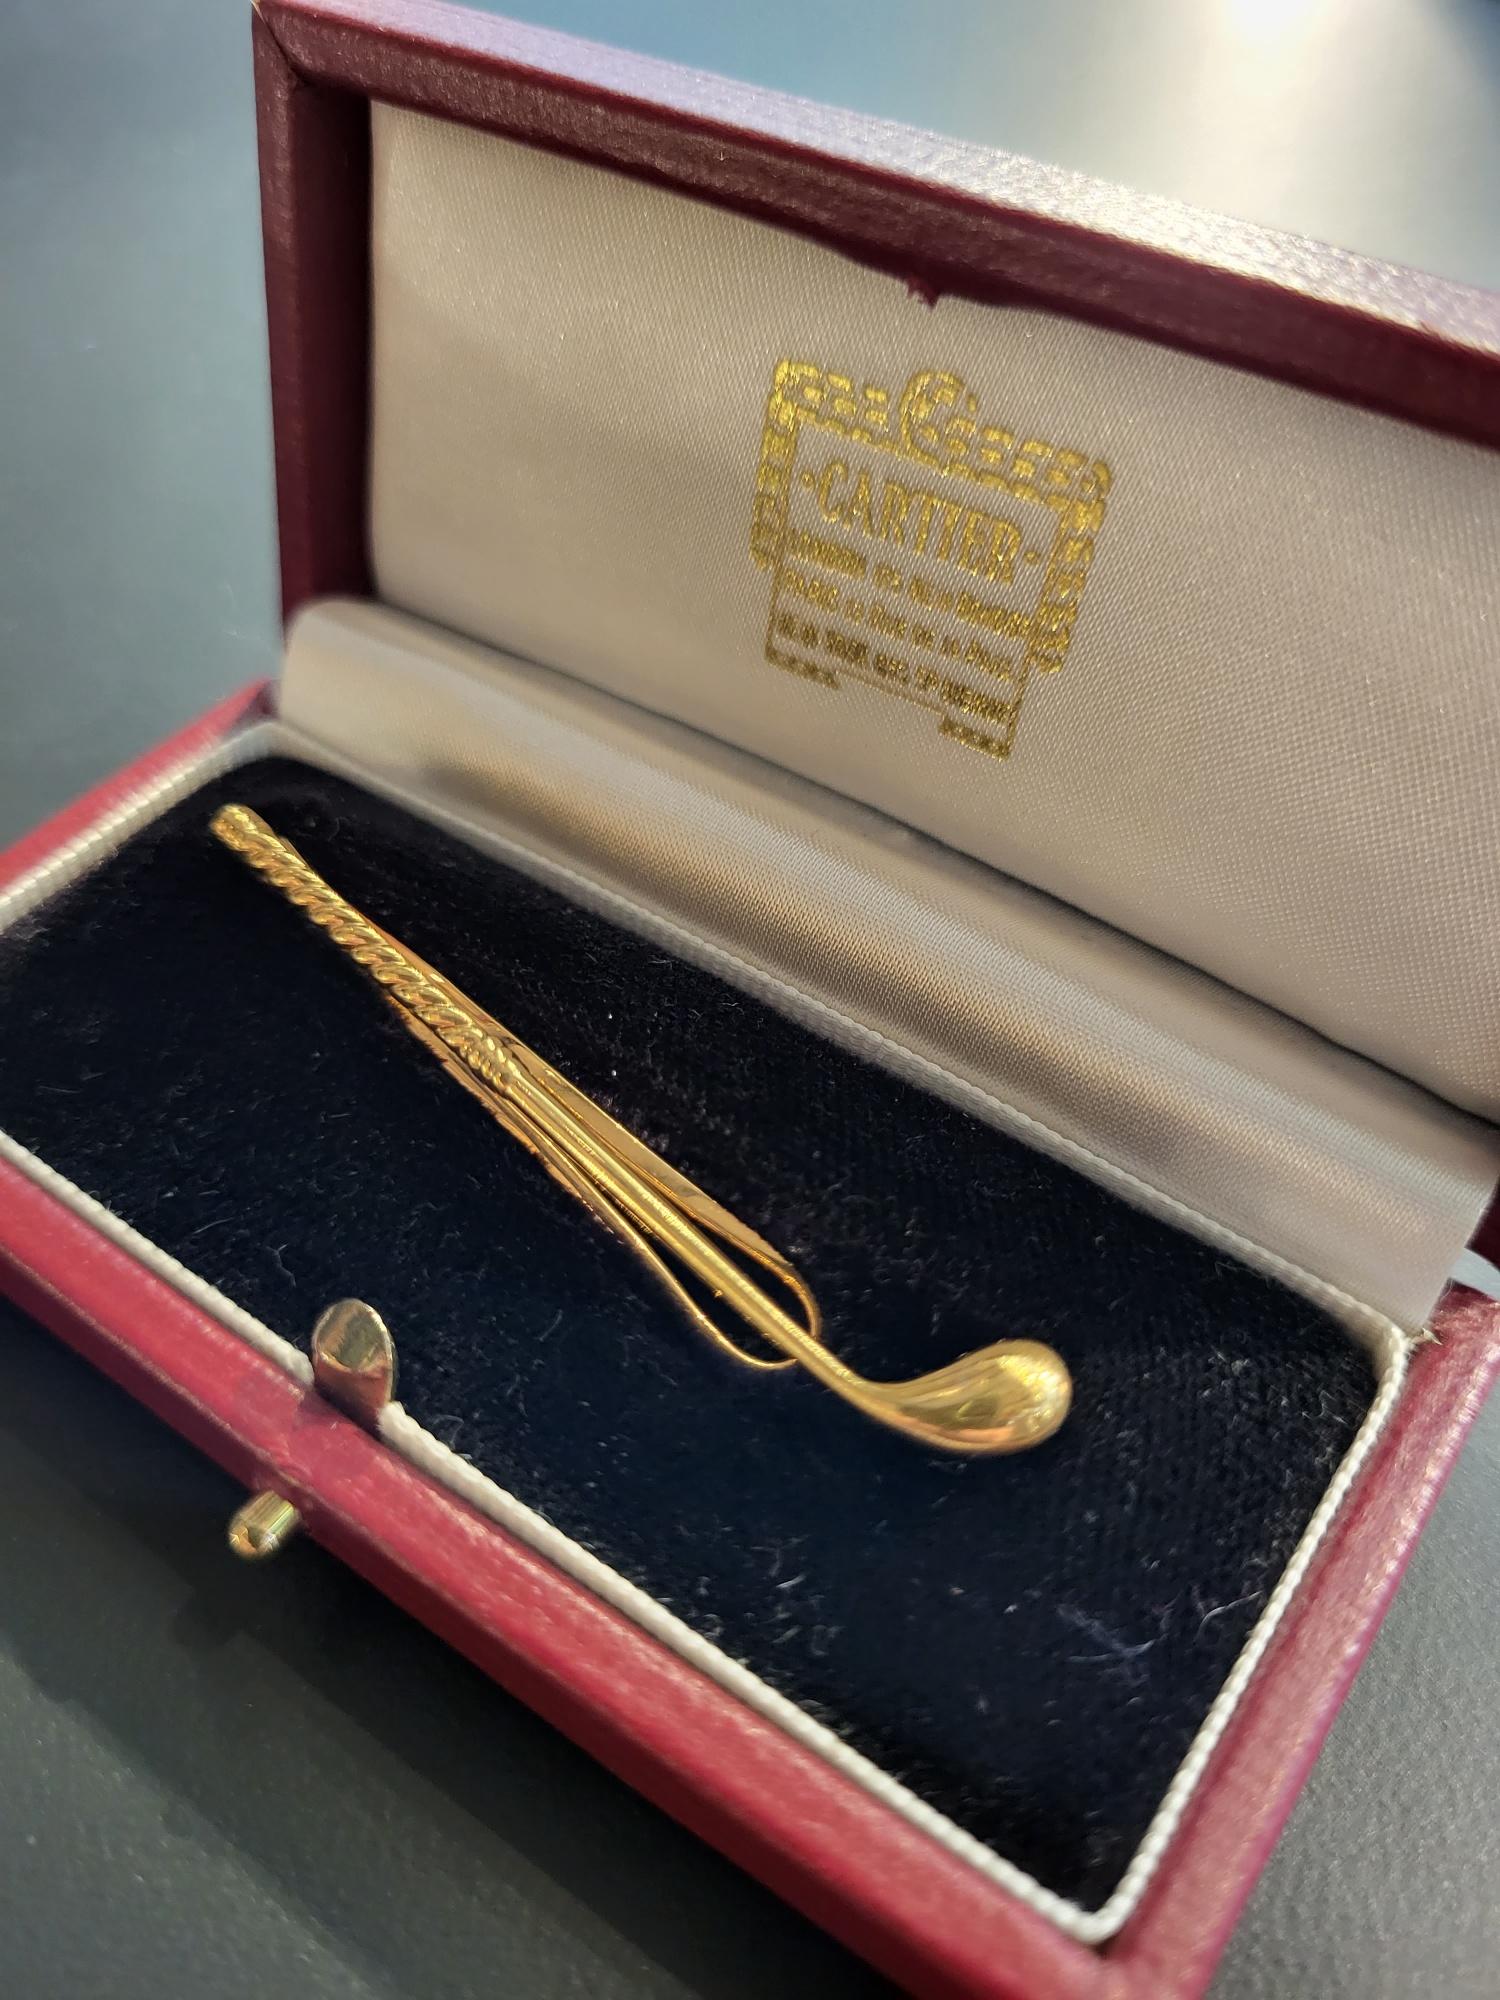 Cartier, Paris

Eine Krawattenklammer aus 18 Karat Gold in Form eines stilisierten 